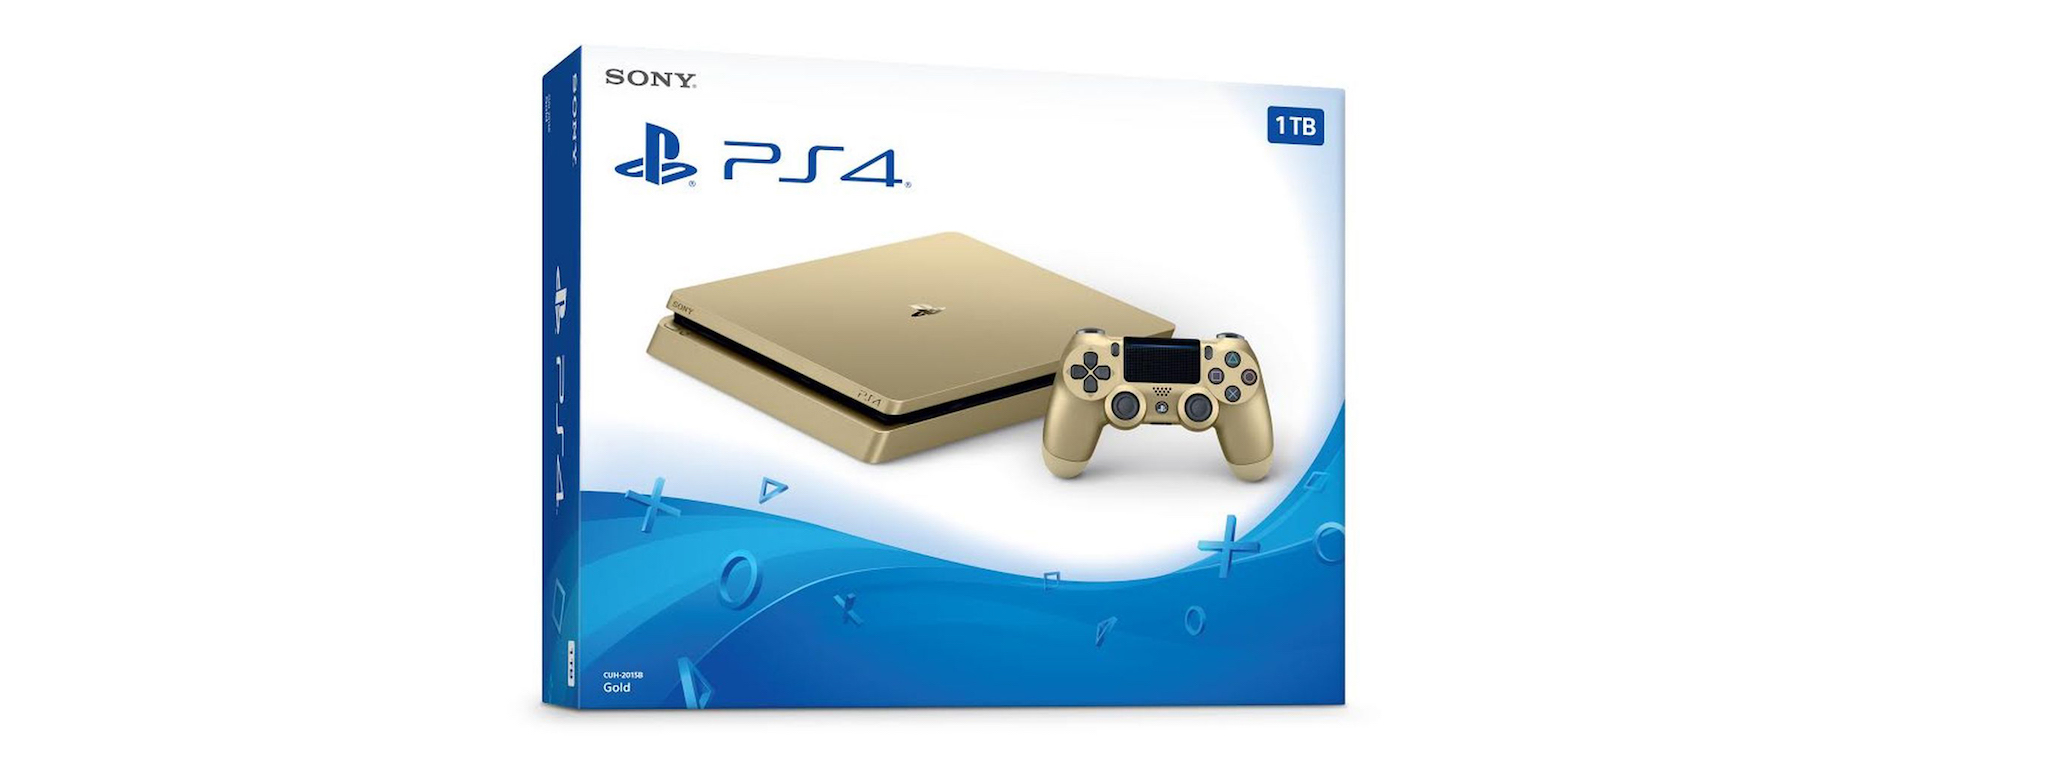 Sony PlayStation 4 có thêm màu vàng, giảm giá 50 USD trong vòng 1 tuần